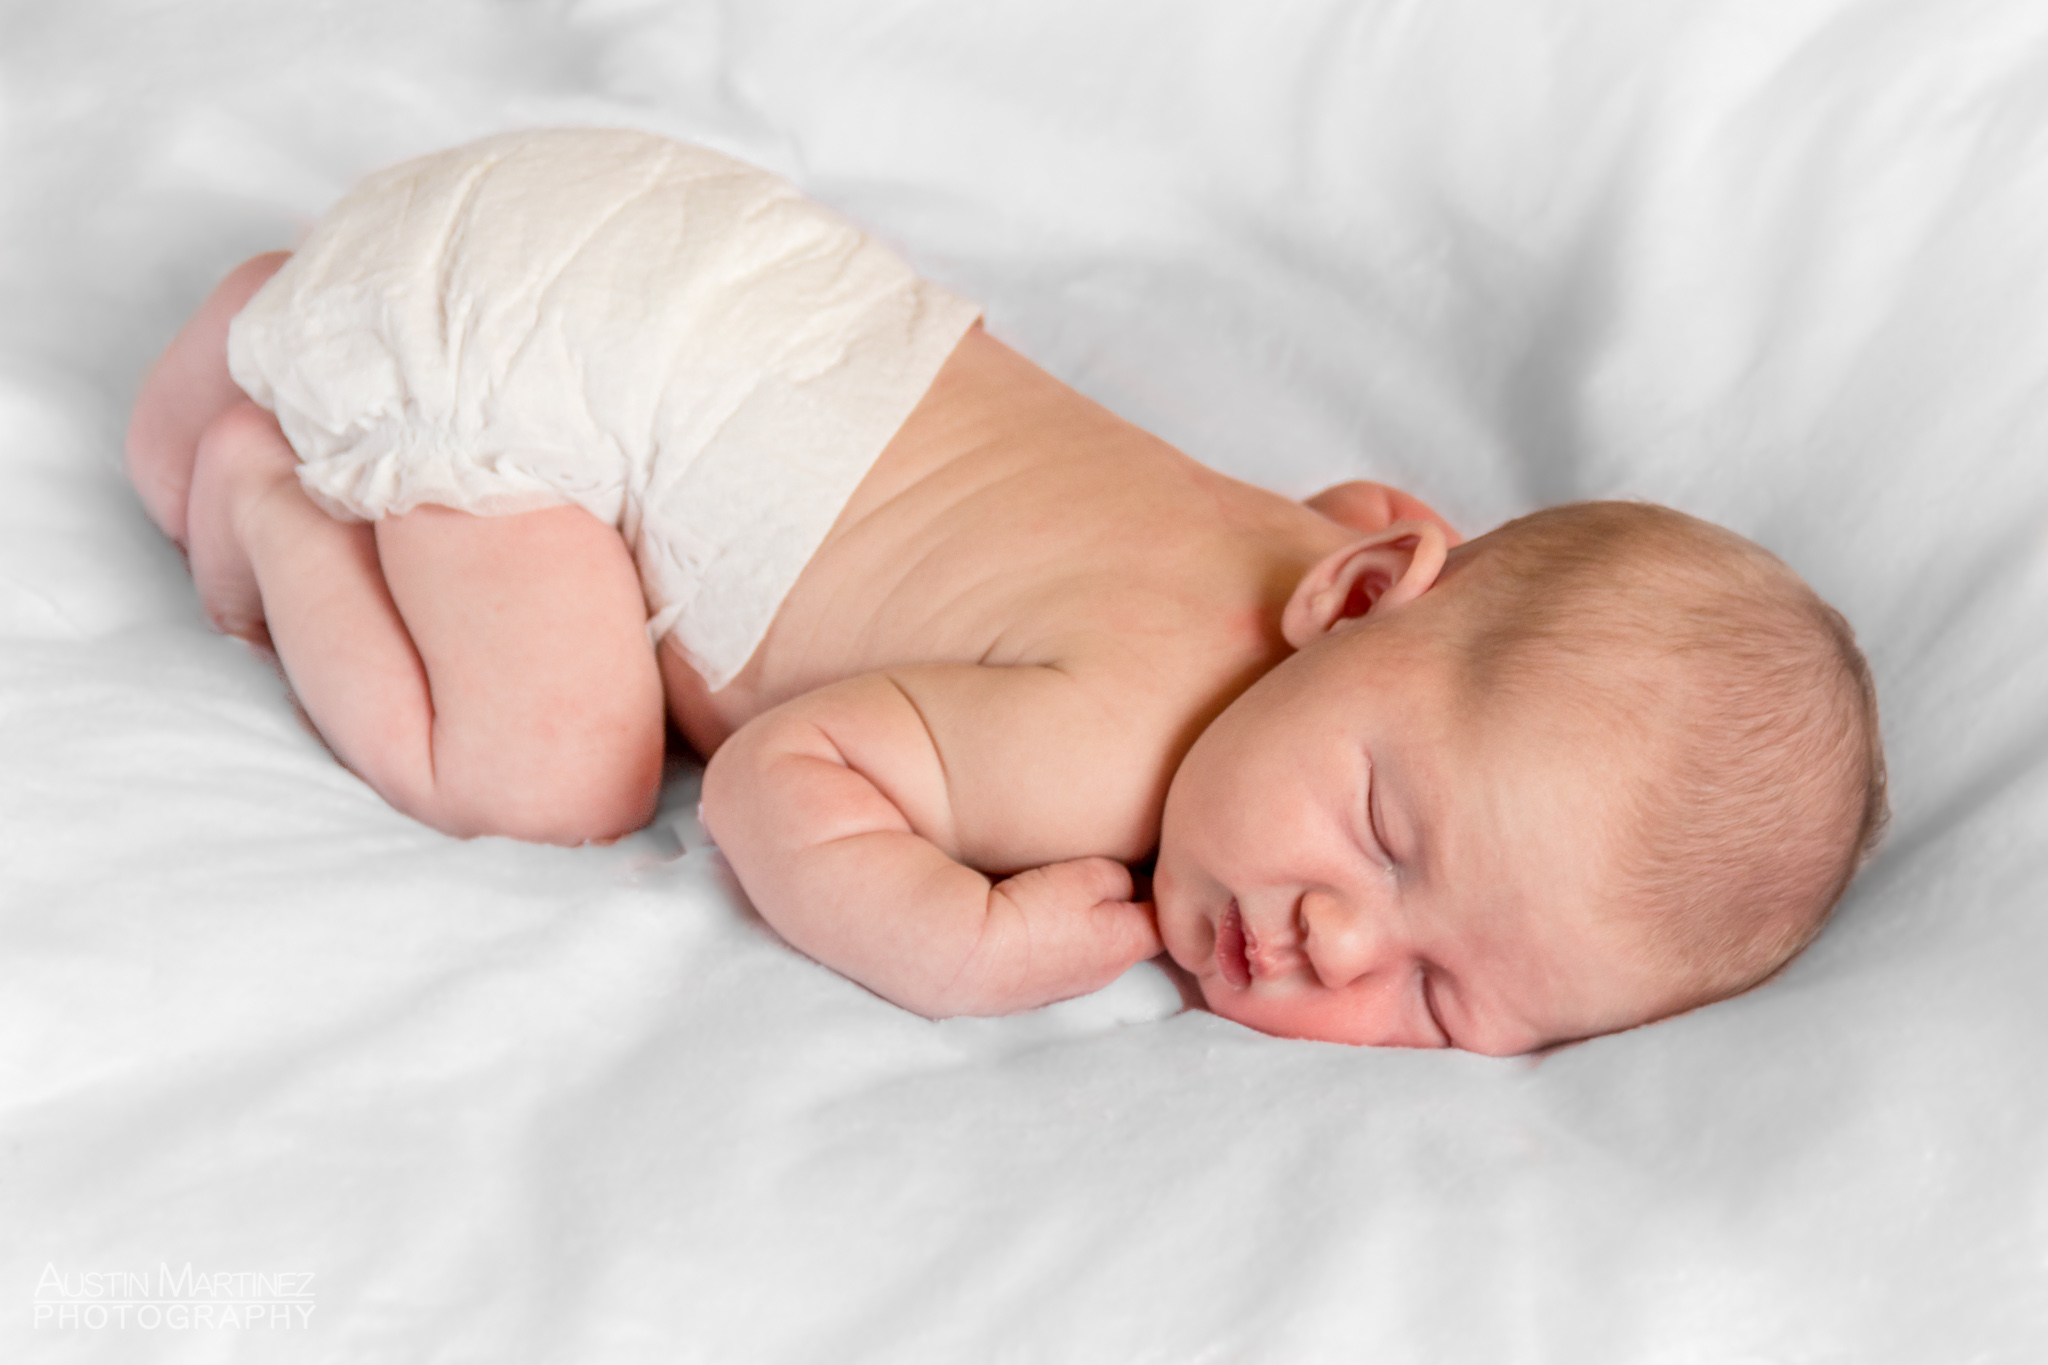 Sloane Rose Newborn Photoshoot